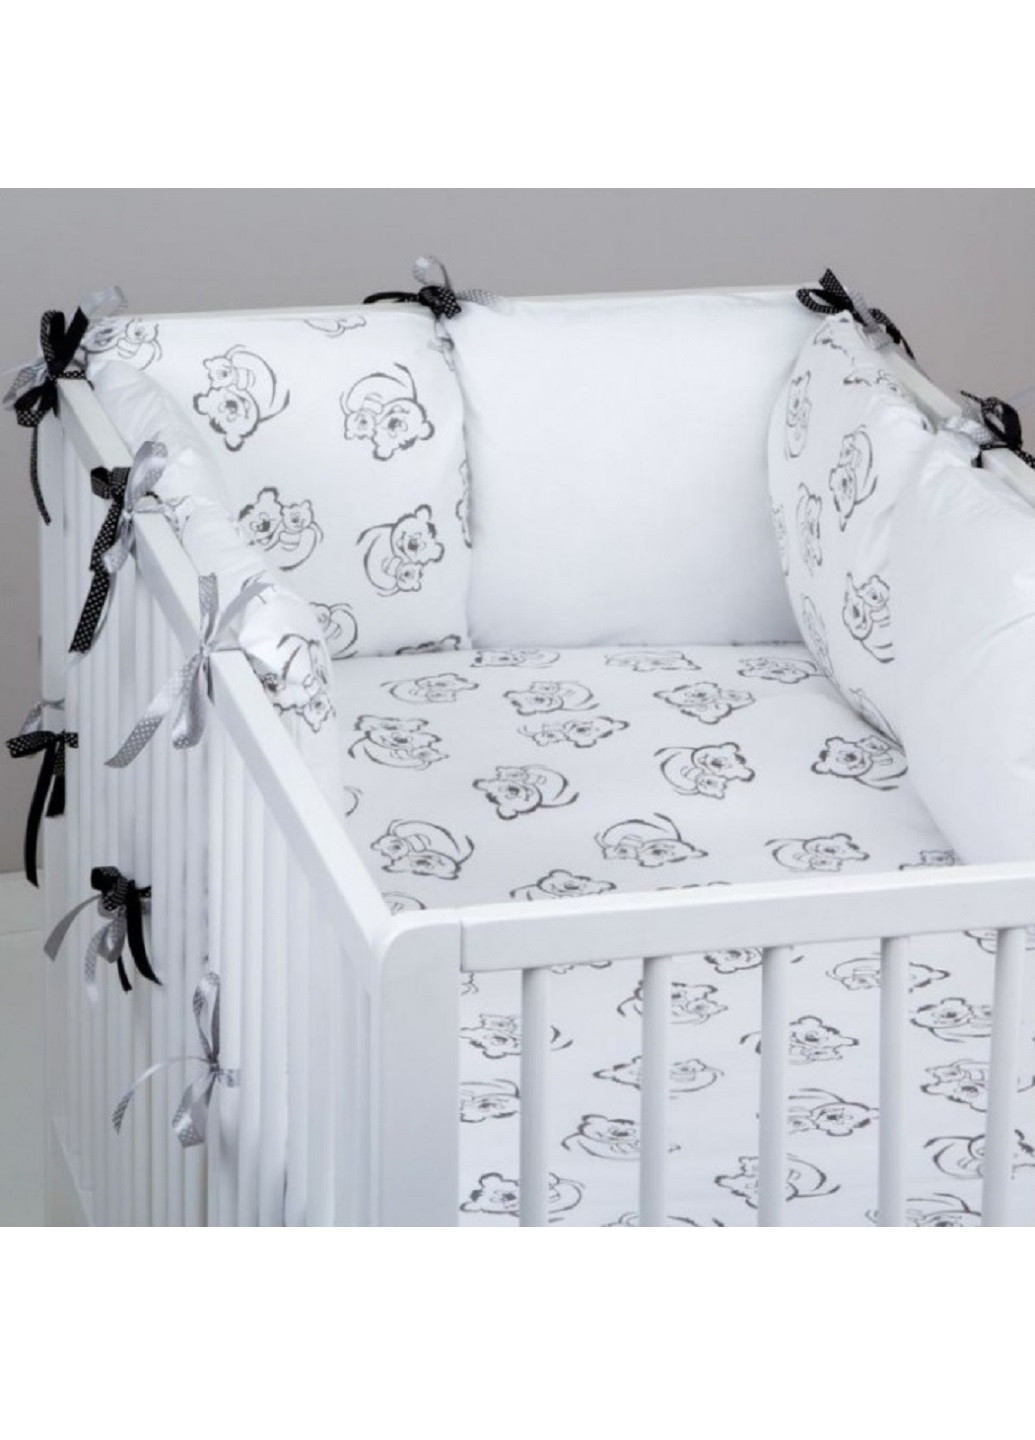 Комплект в детскую кроватку кровать люльку набор бортики защита по всему периметру постельное белье ручной работы (286312-Нов) Unbranded (253264671)